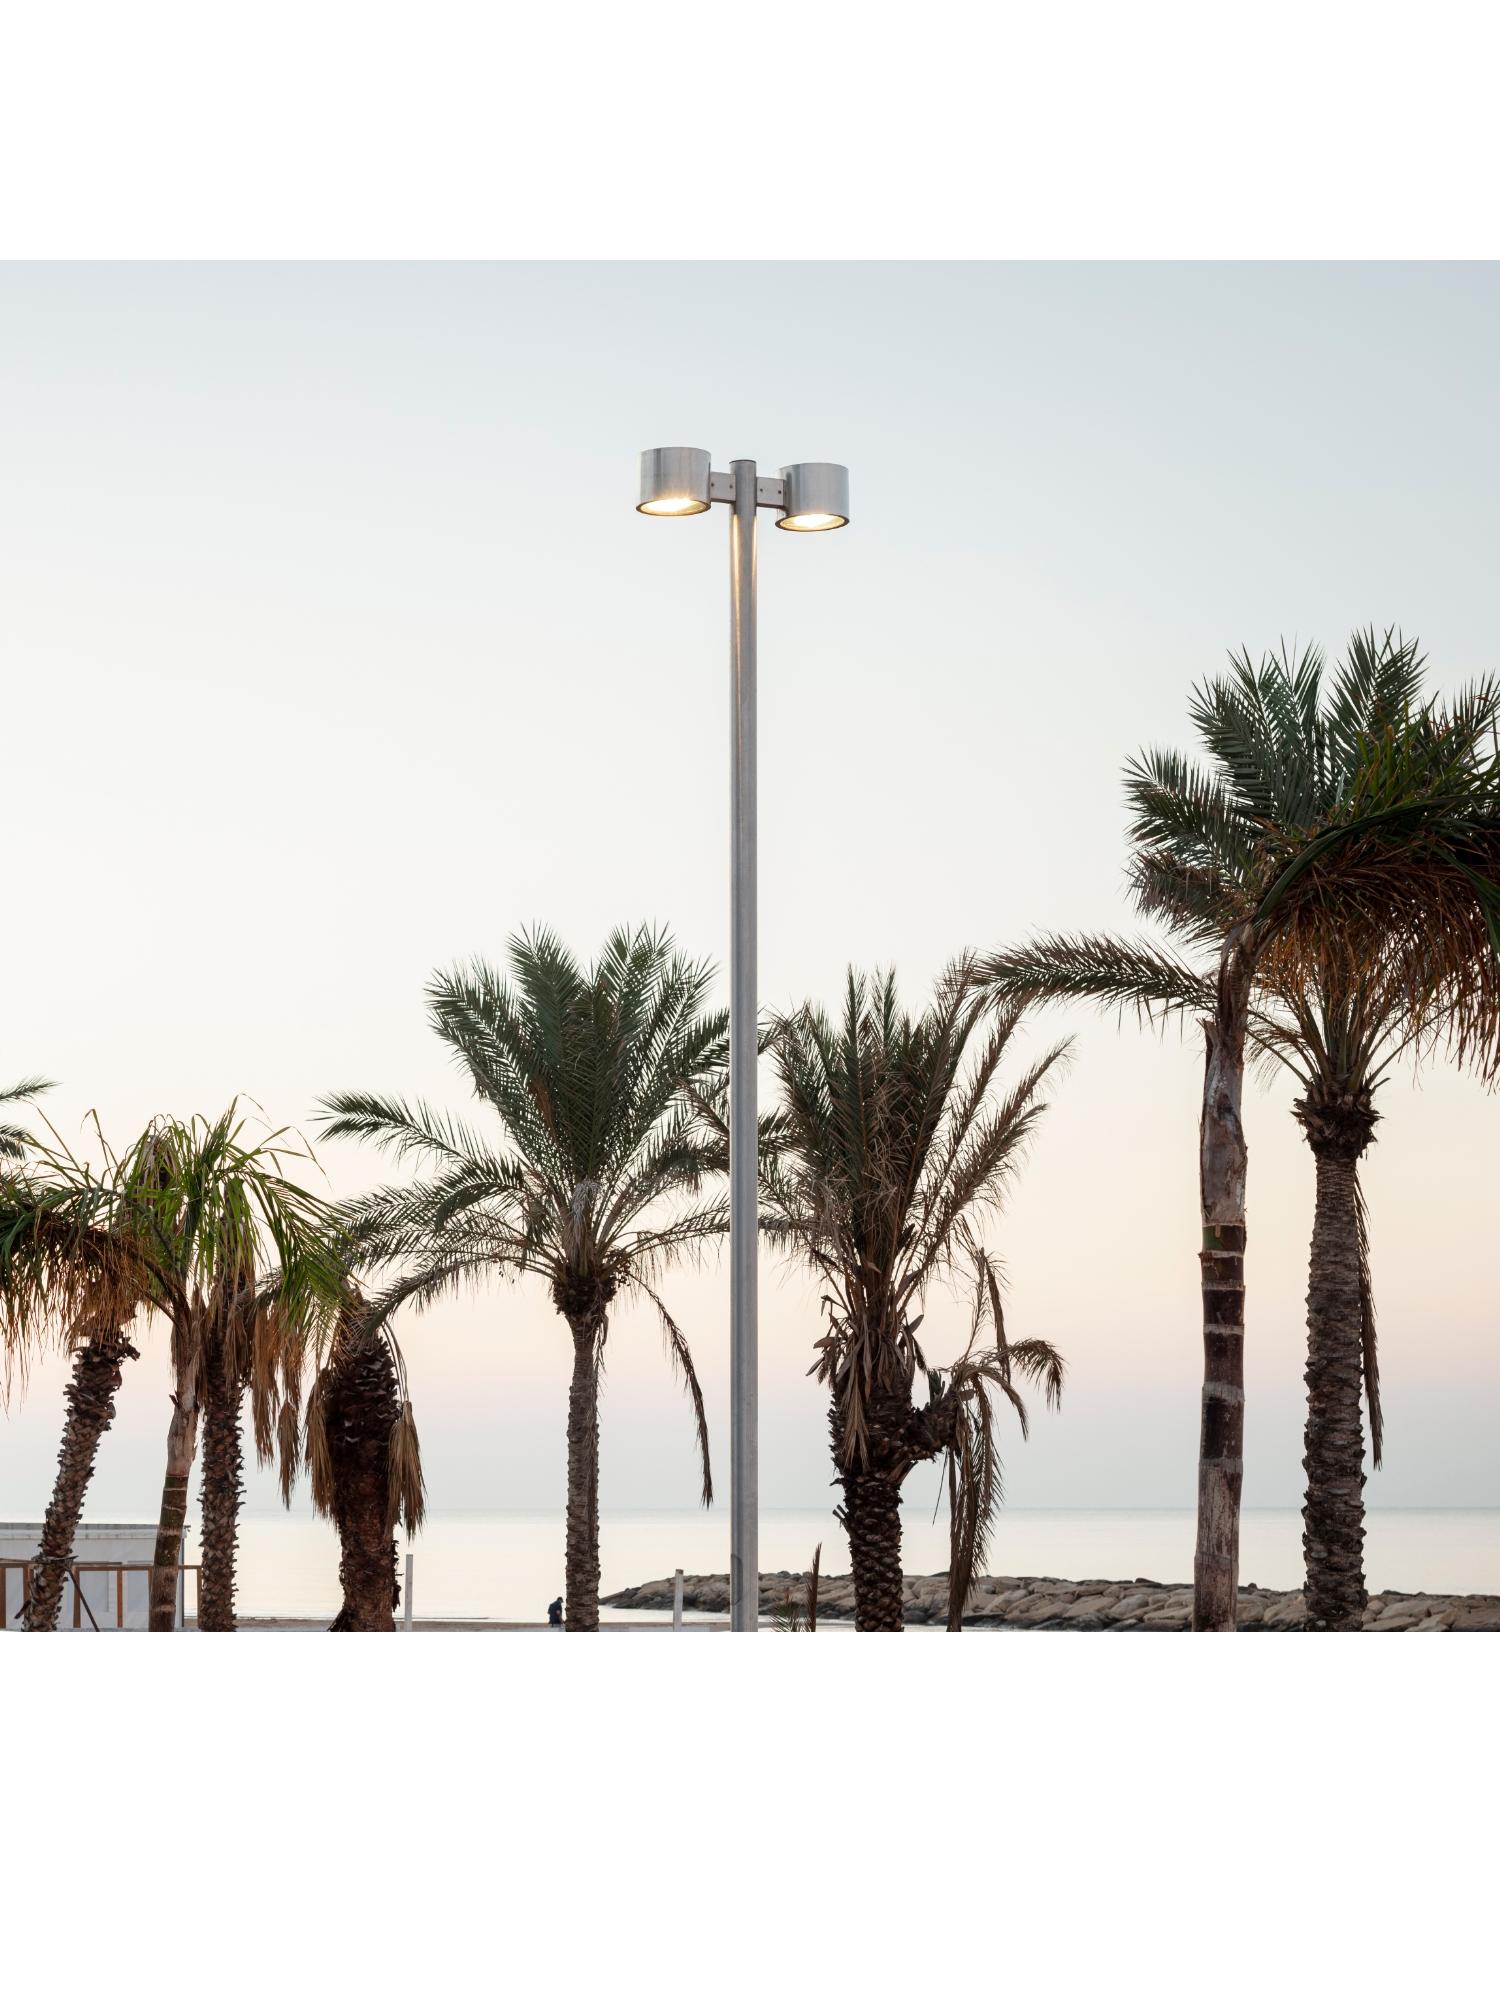 Pali stradali per un&rsquo;illuminazione pubblica efficiente:
il lungomare di Marina di Ragusa